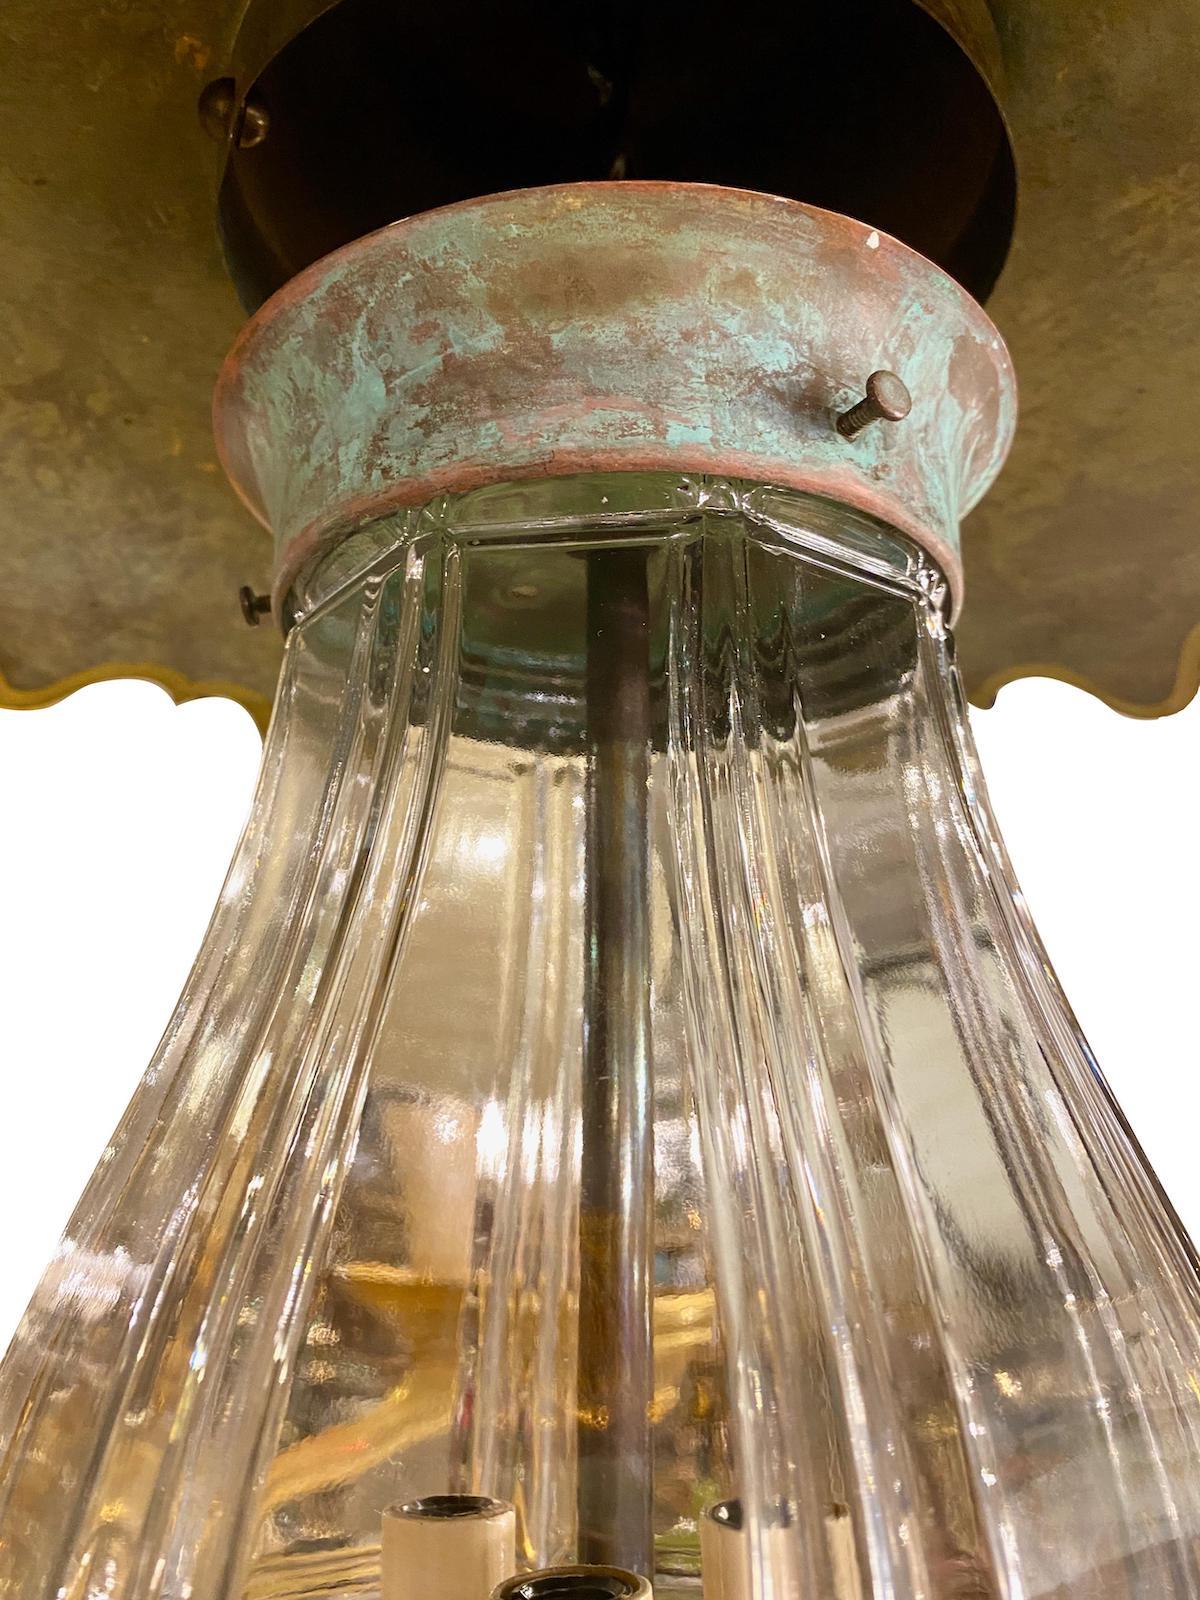 Une lanterne suspendue en verre moulé datant des années 1950 avec trois lumières intérieures en forme de candélabre et un abat-jour peint.

Mesures :
Diamètre 24